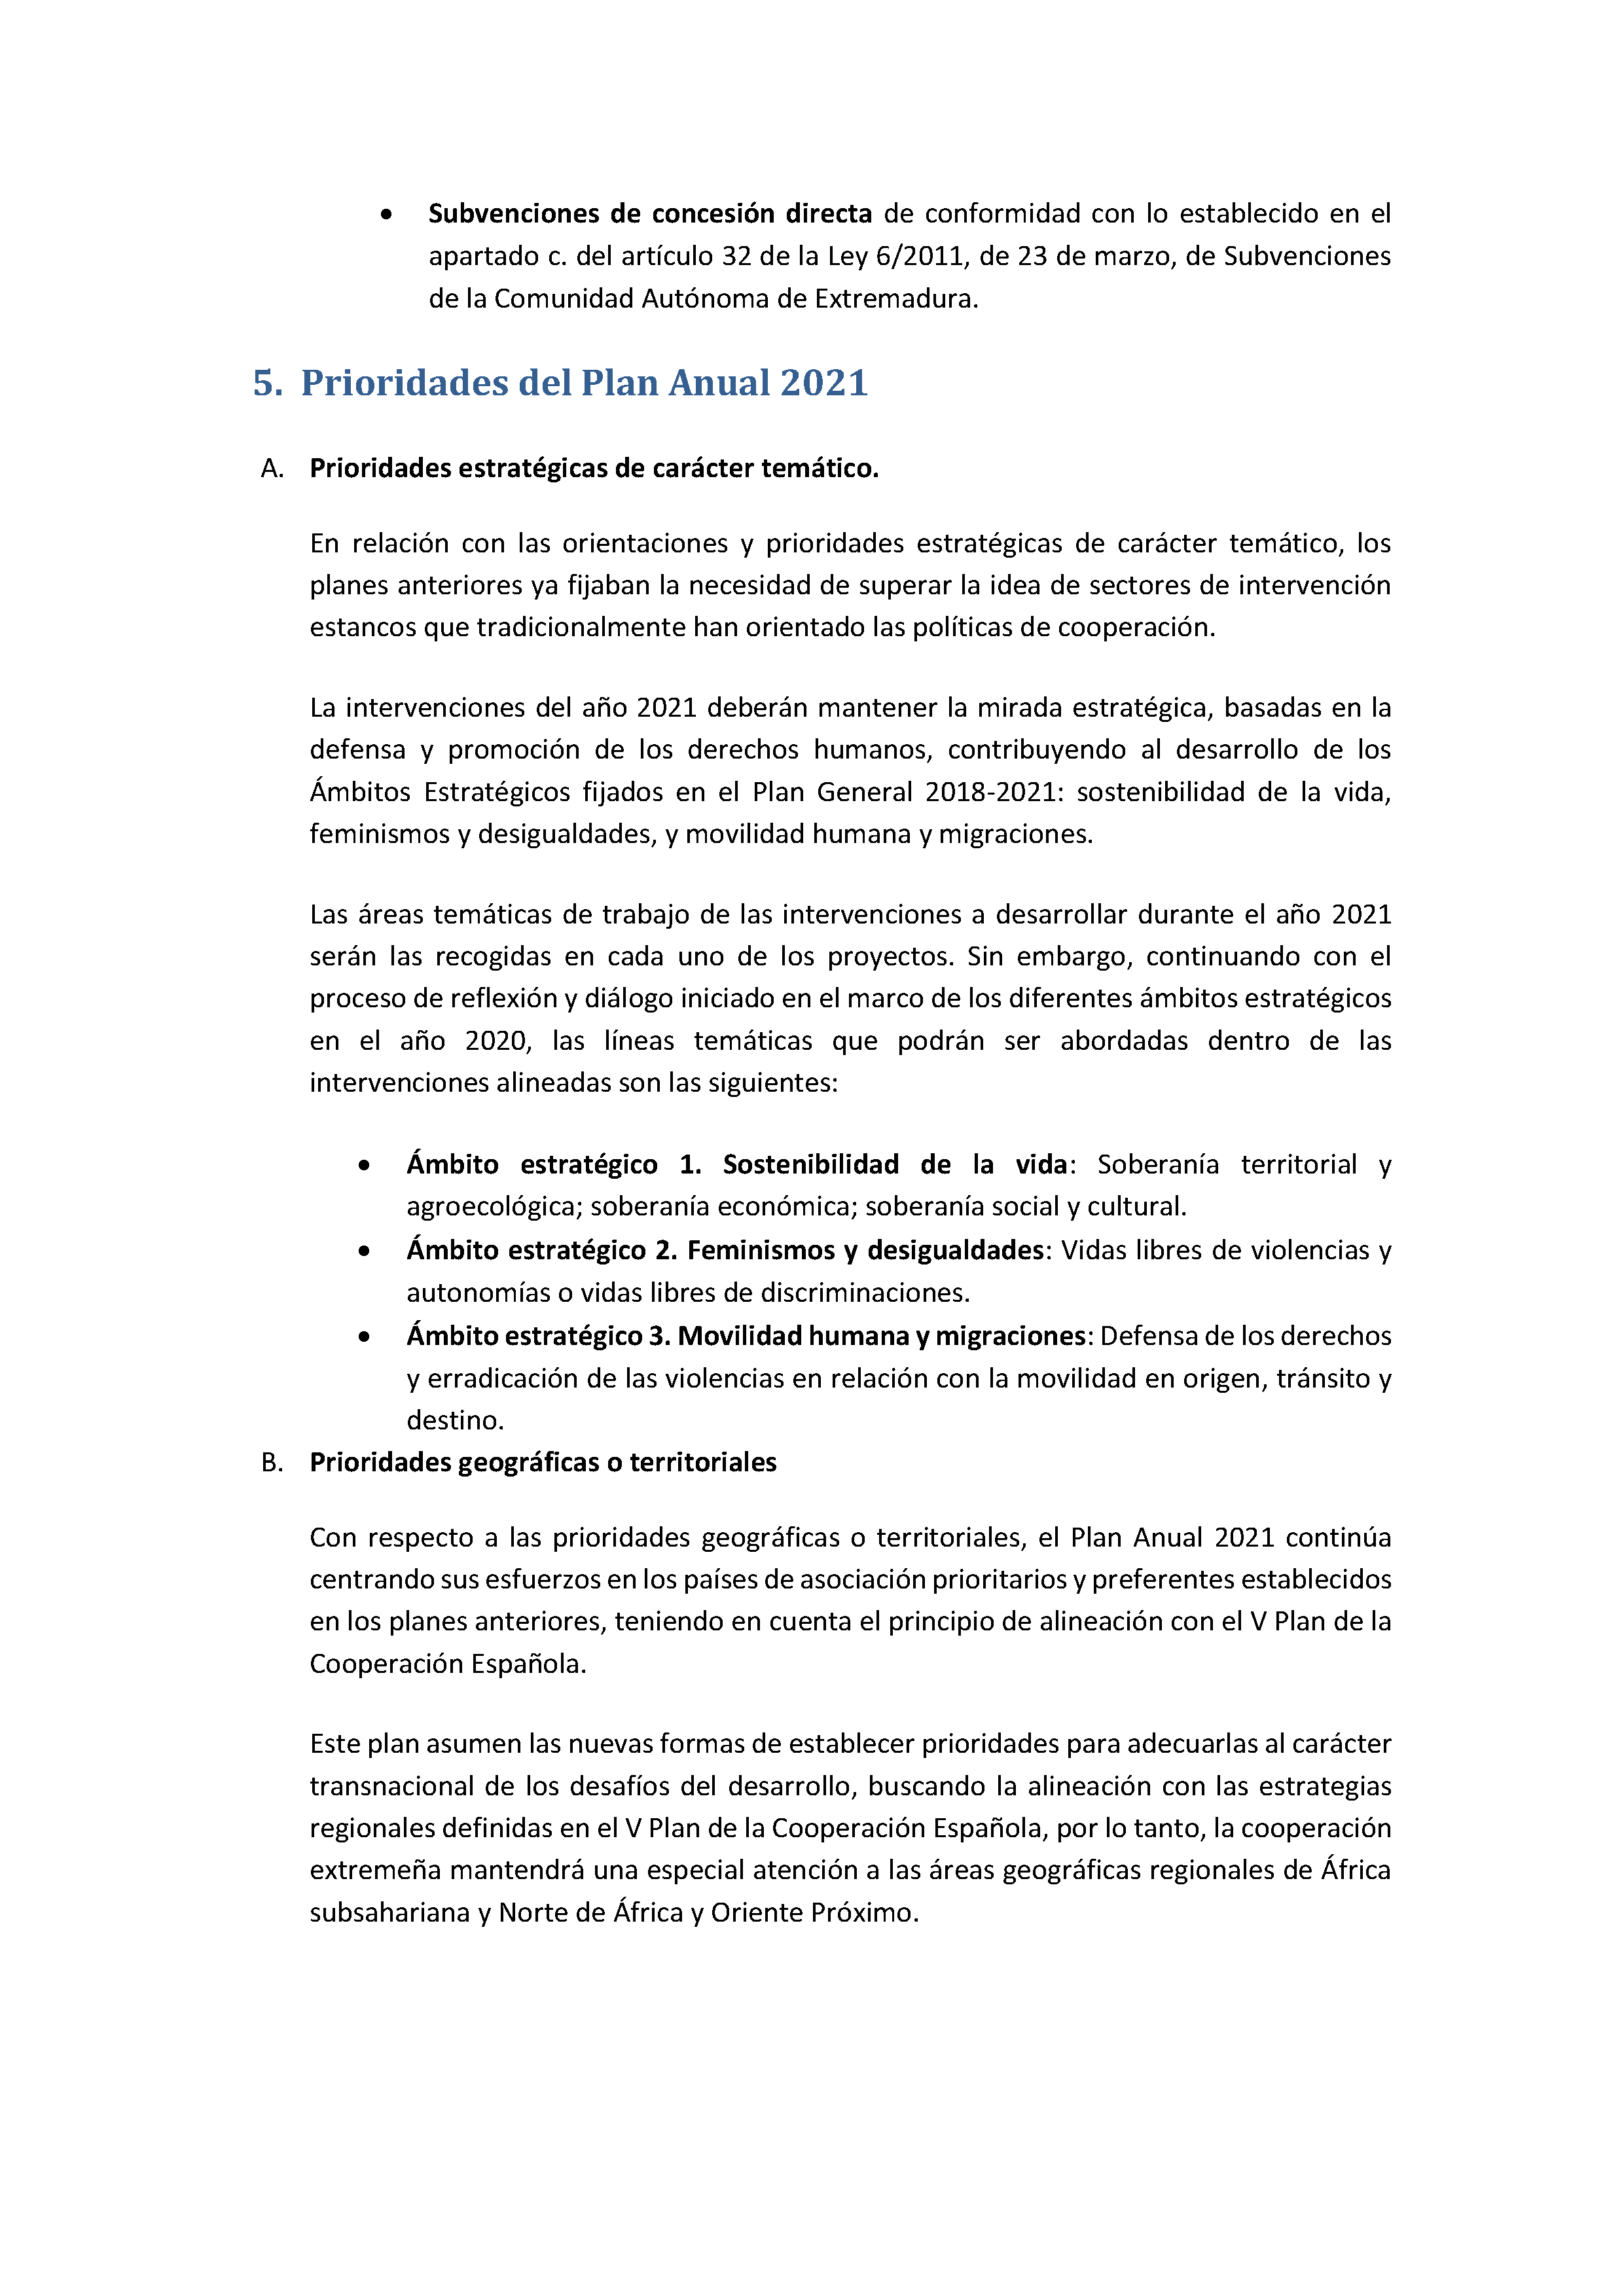 PLAN ANUAL DE COOPERACIÓN EXTREMEÑA 2021 Pag 17